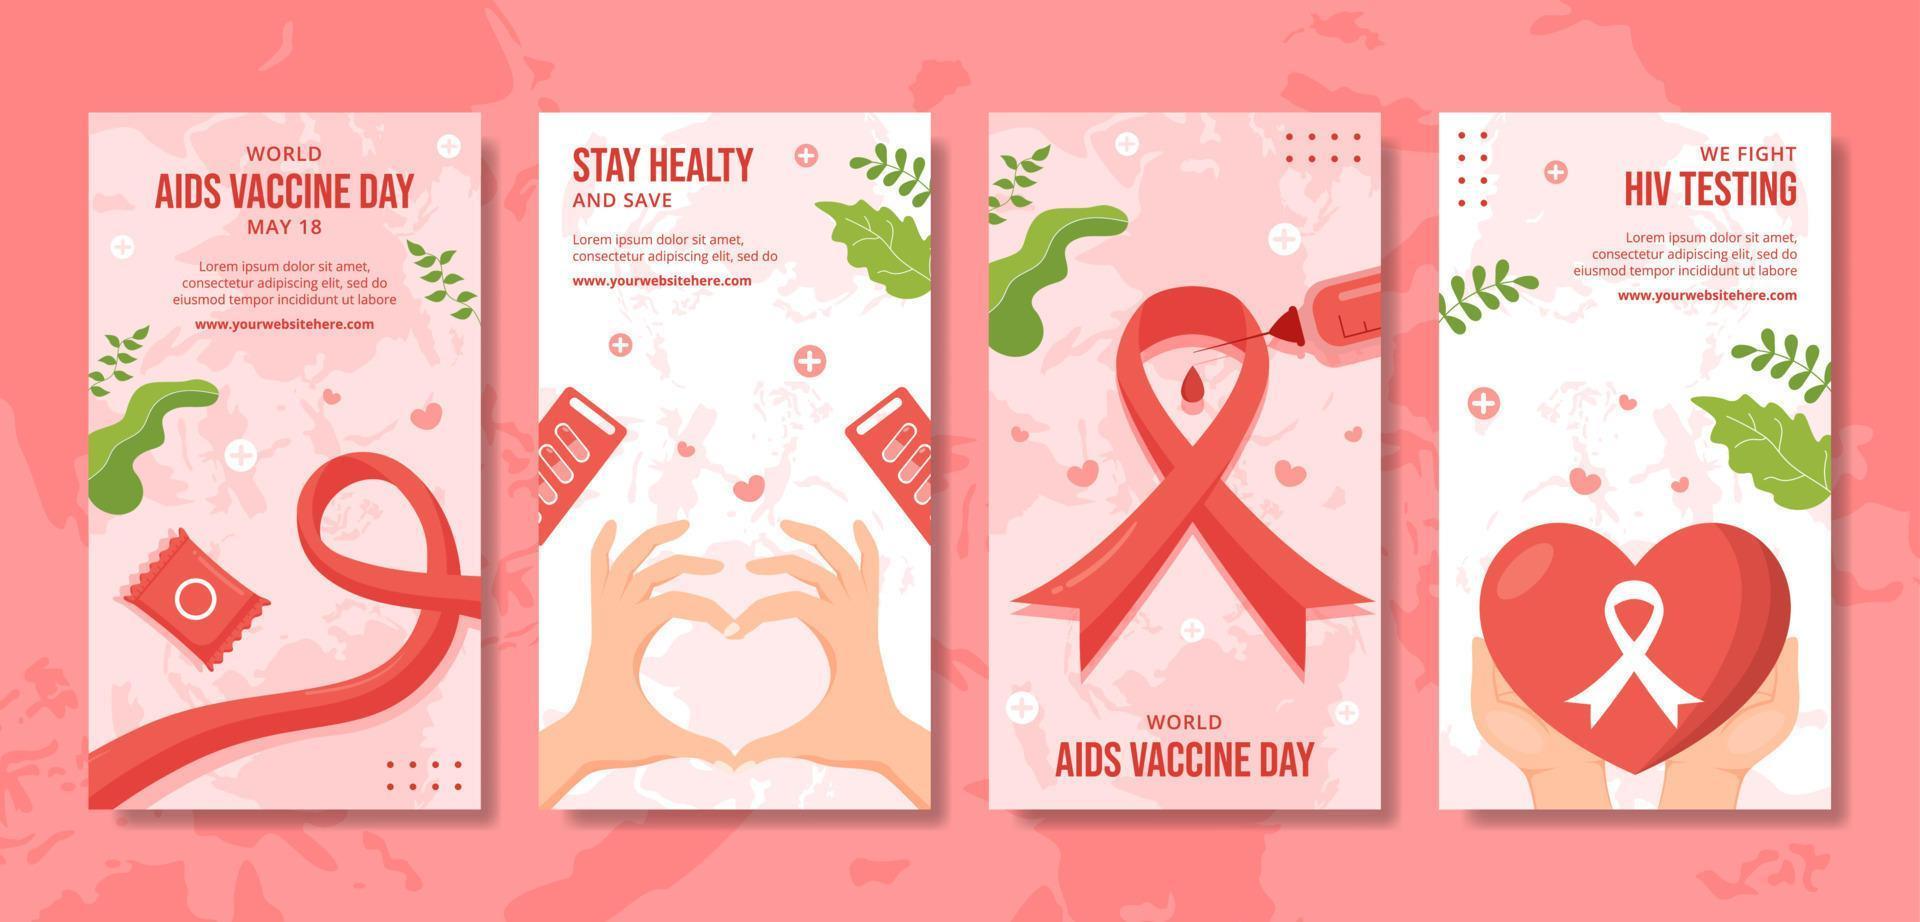 mondo AIDS vaccino giorno sociale media storie piatto cartone animato mano disegnato modelli illustrazione vettore